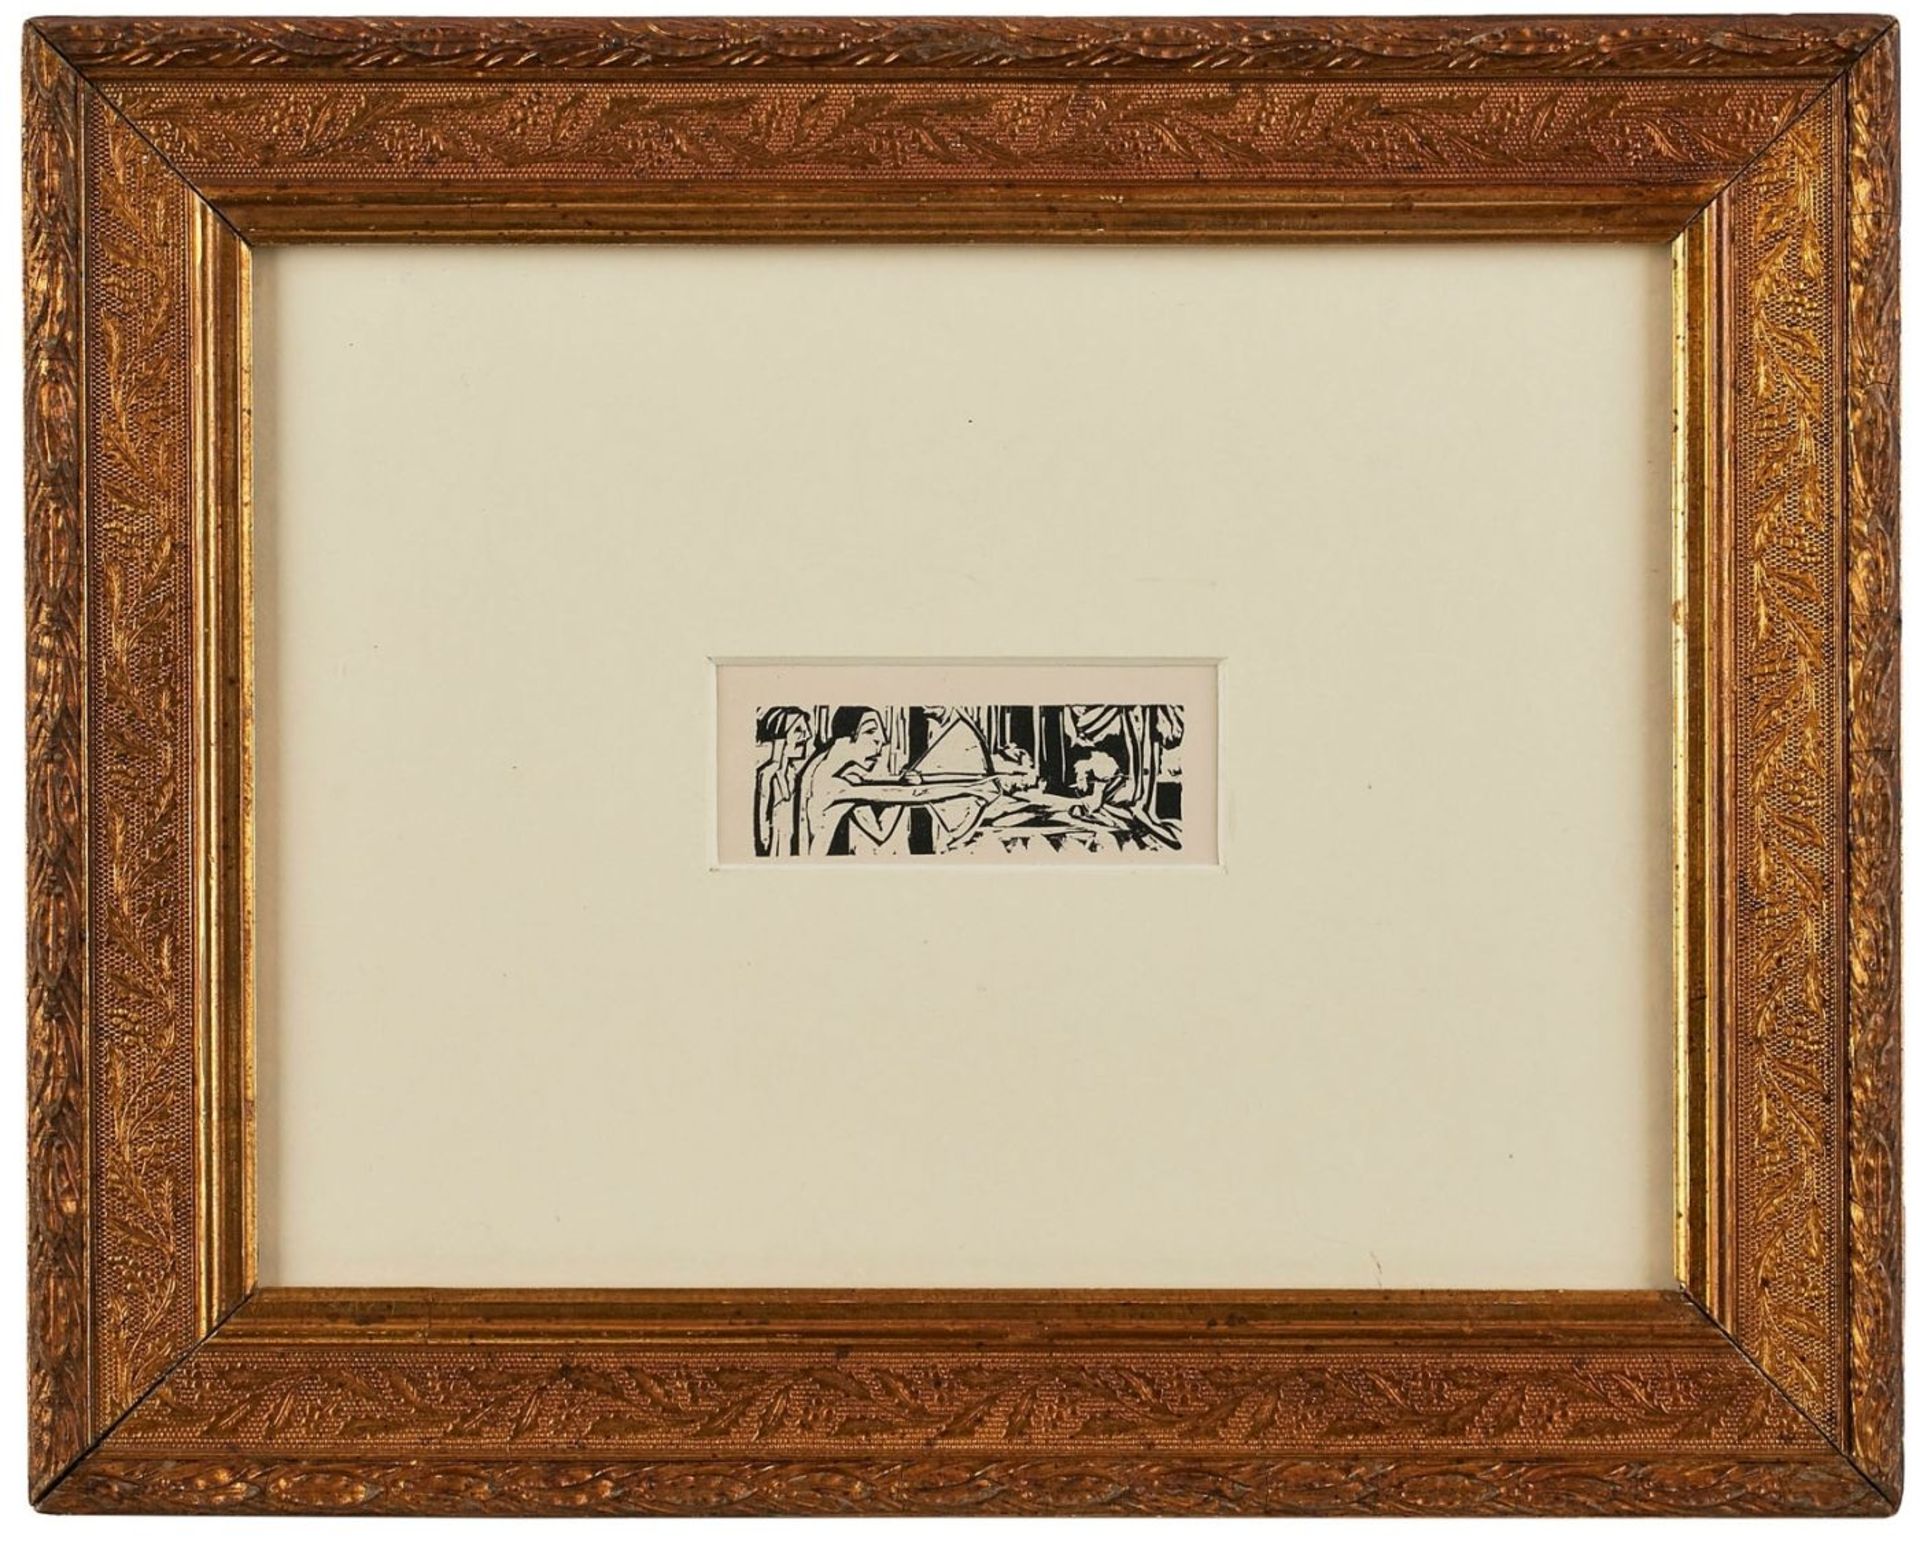 Holzschnitt Ernst Ludwig Kirchner 1880 - Image 2 of 2